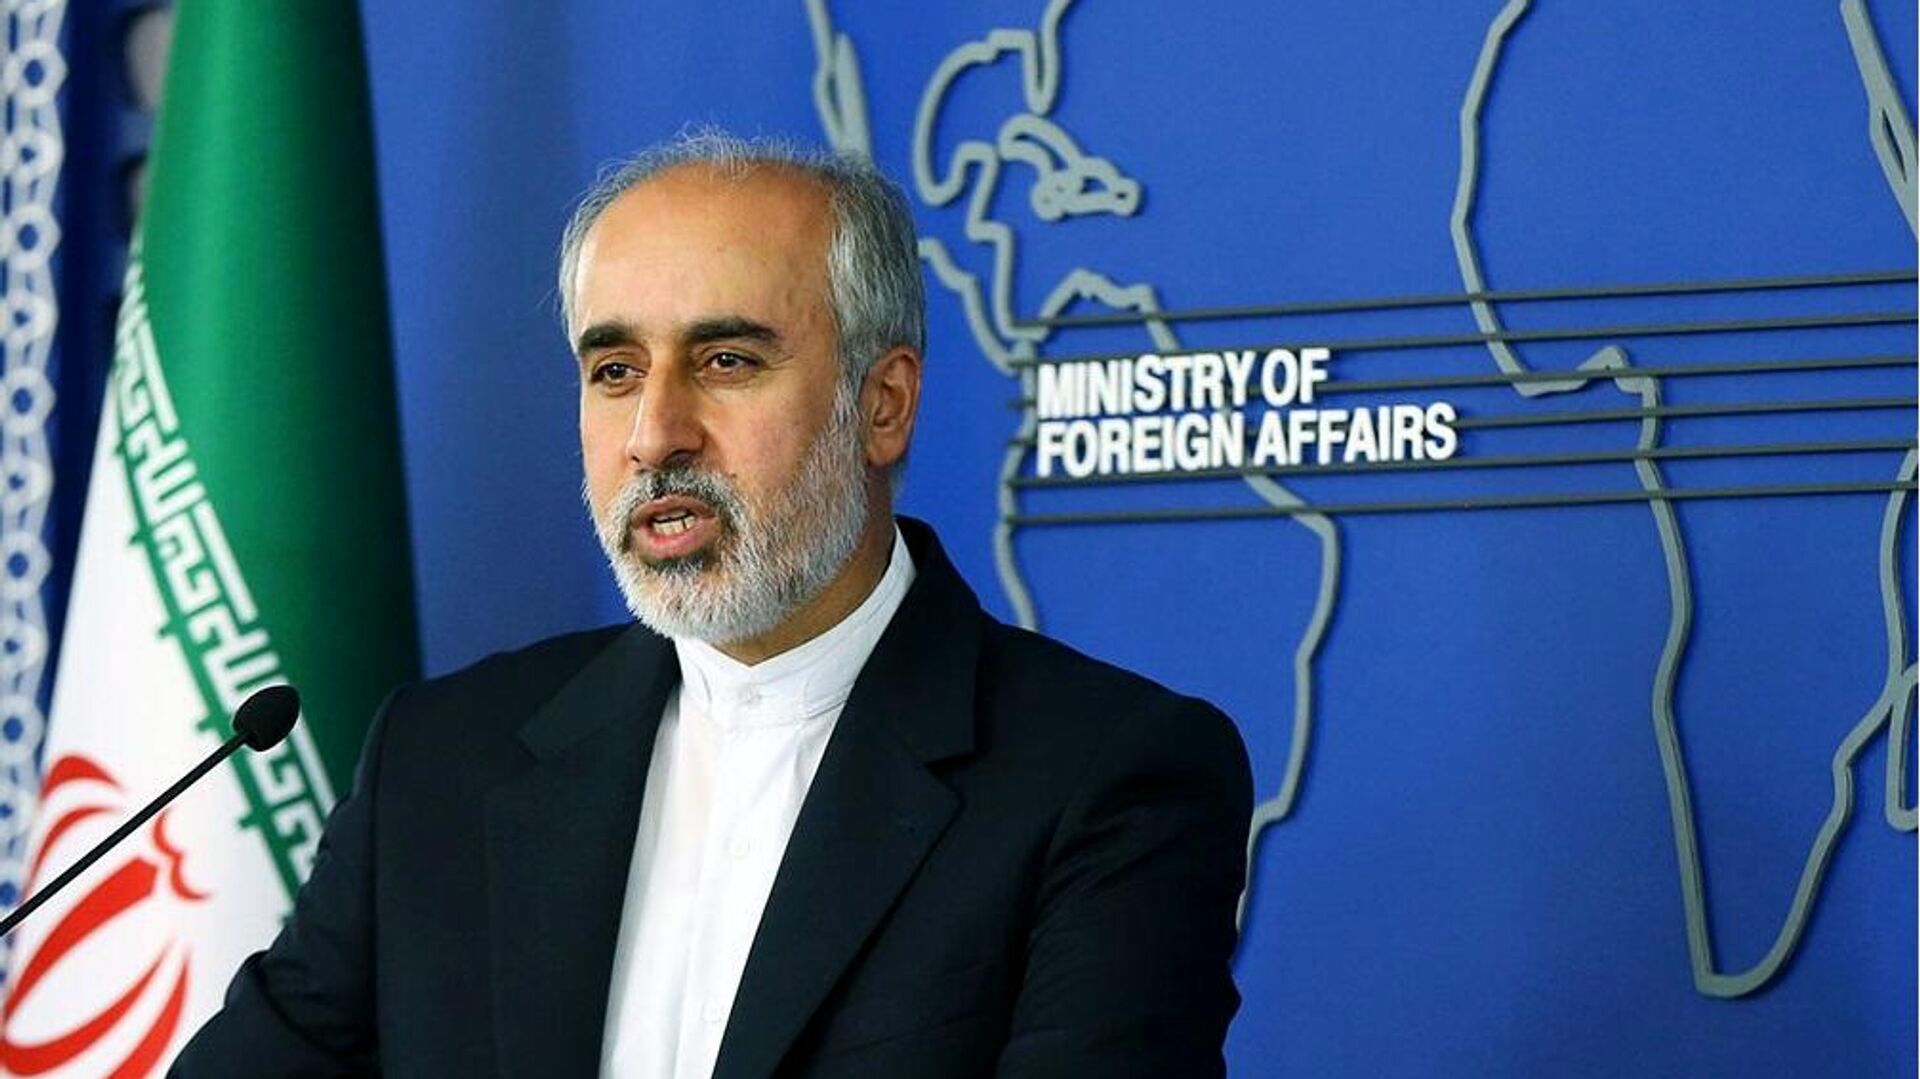 واکنش ایران به پیام یلدایی آمریکا